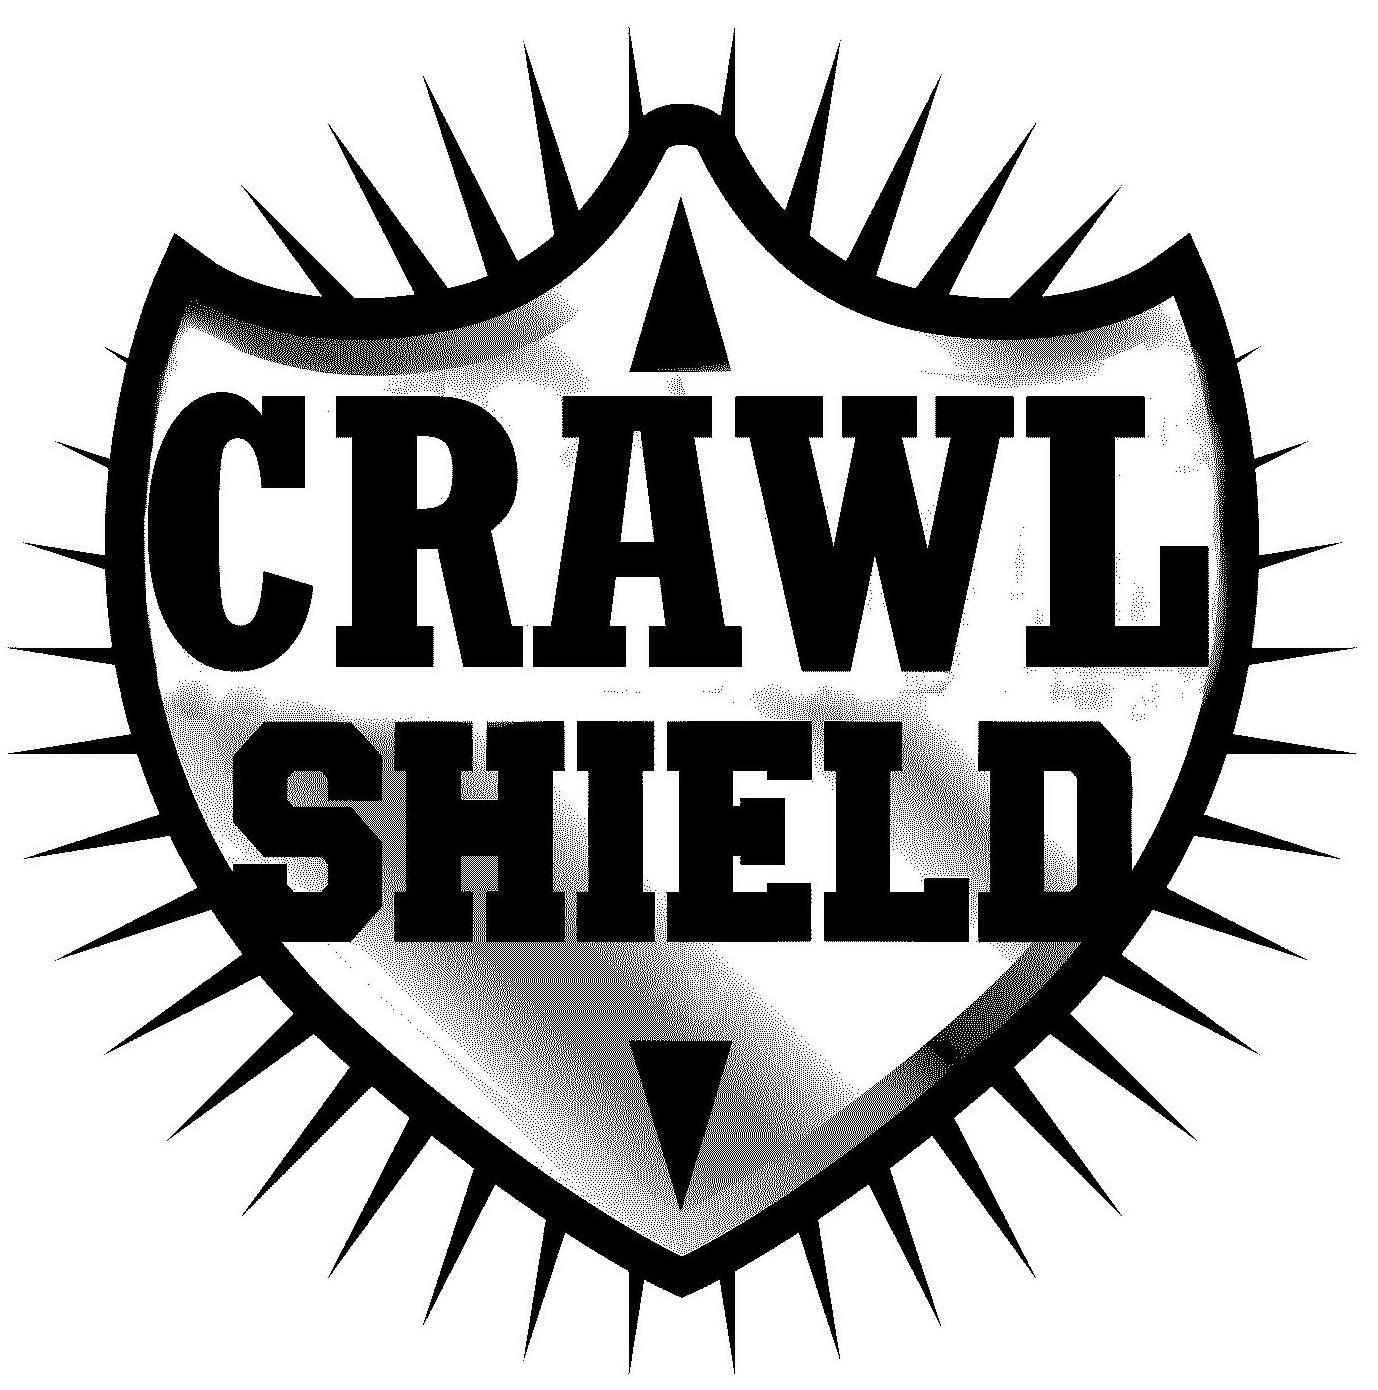  CRAWL SHIELD